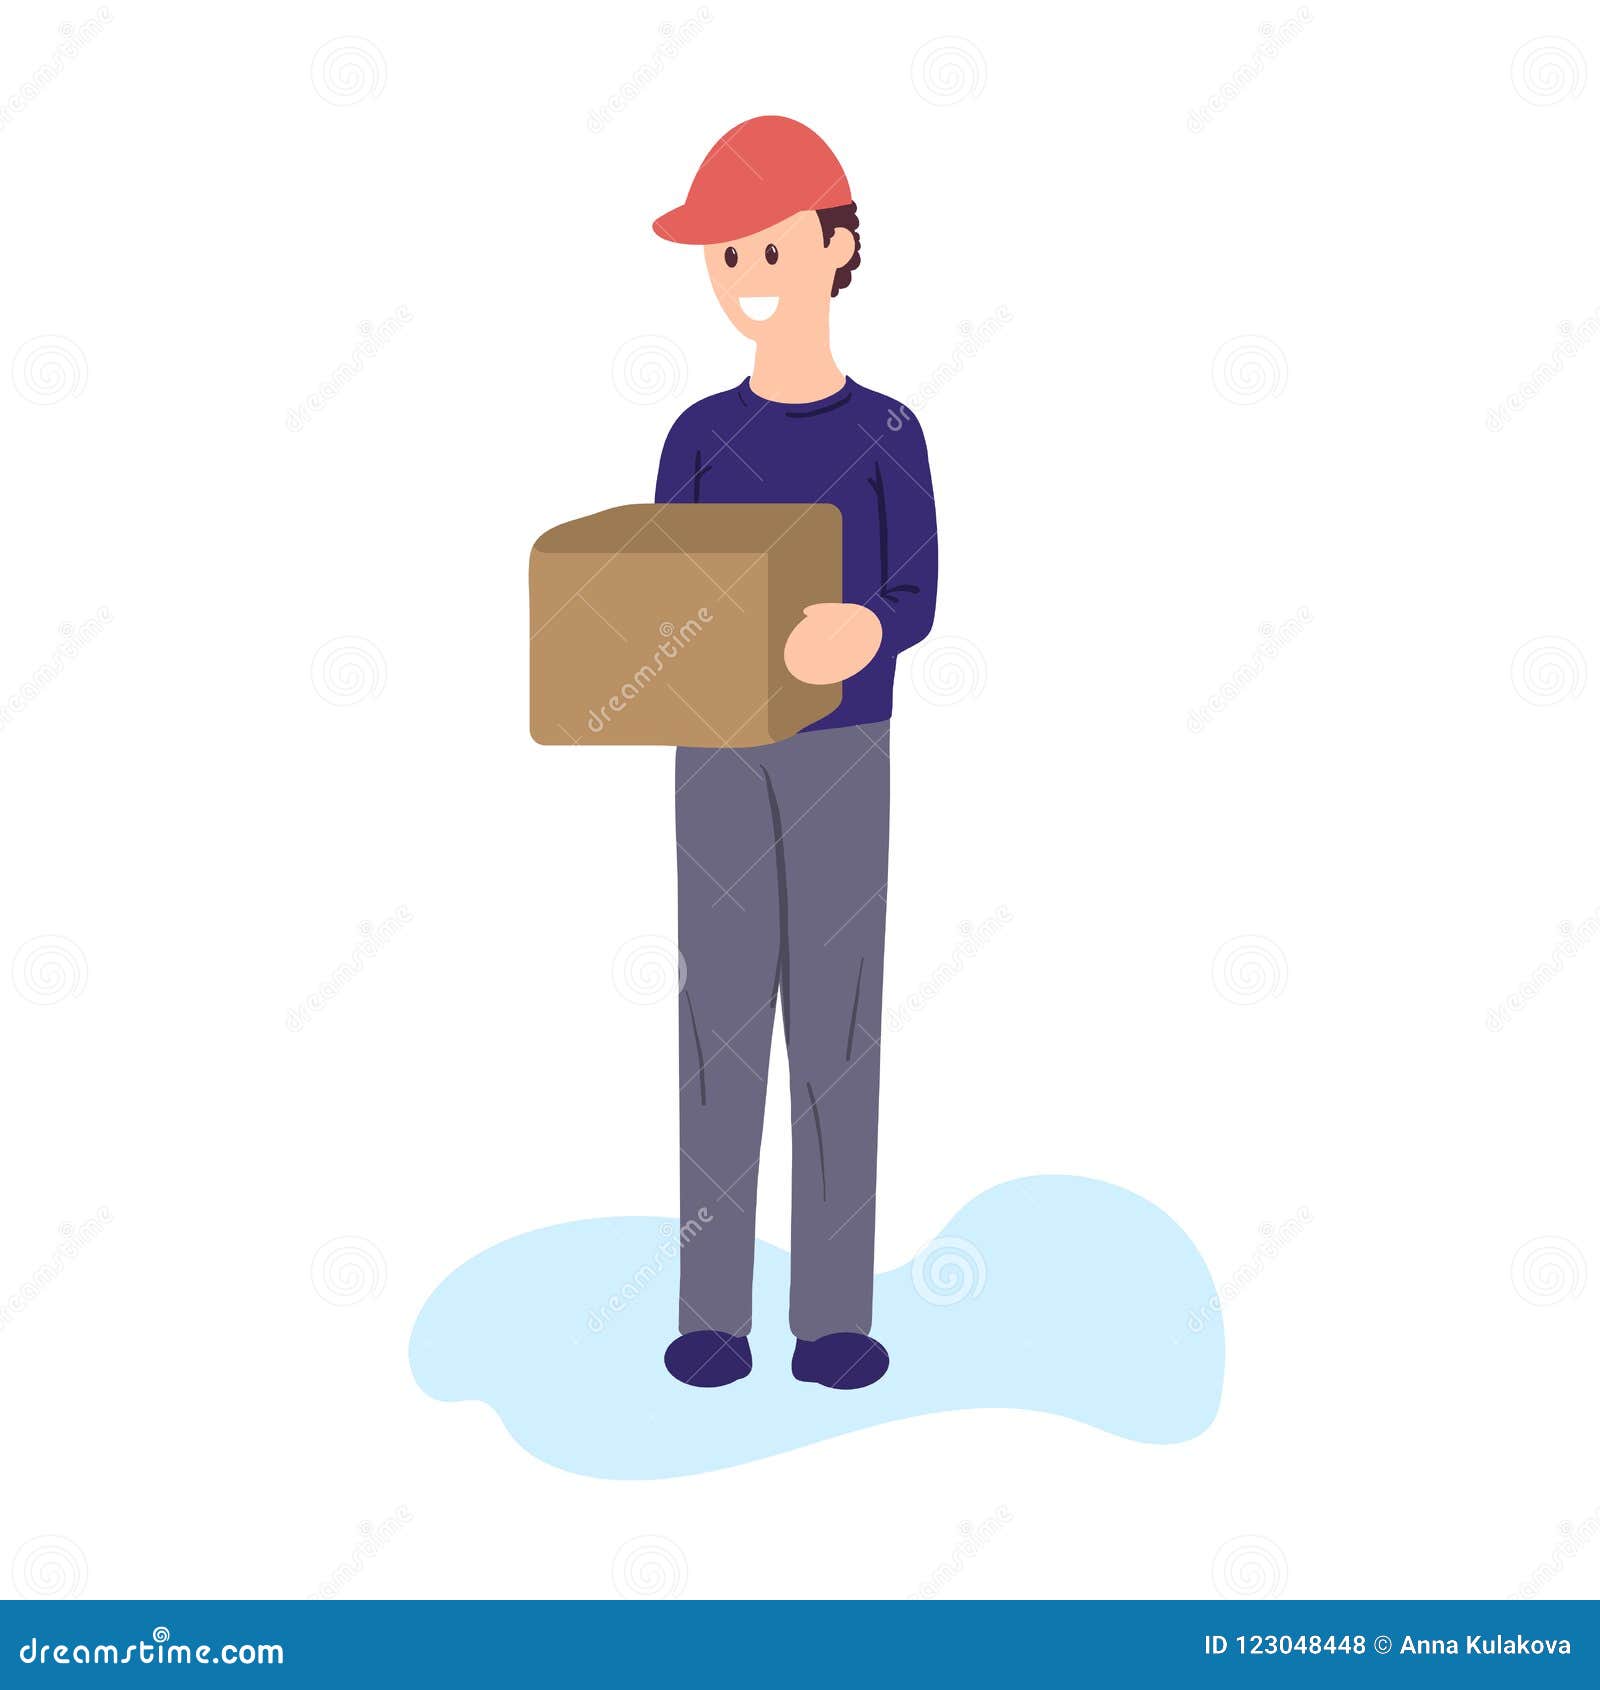 Flat Illustration Of Courier Delivering A Parcel Stock Illustration